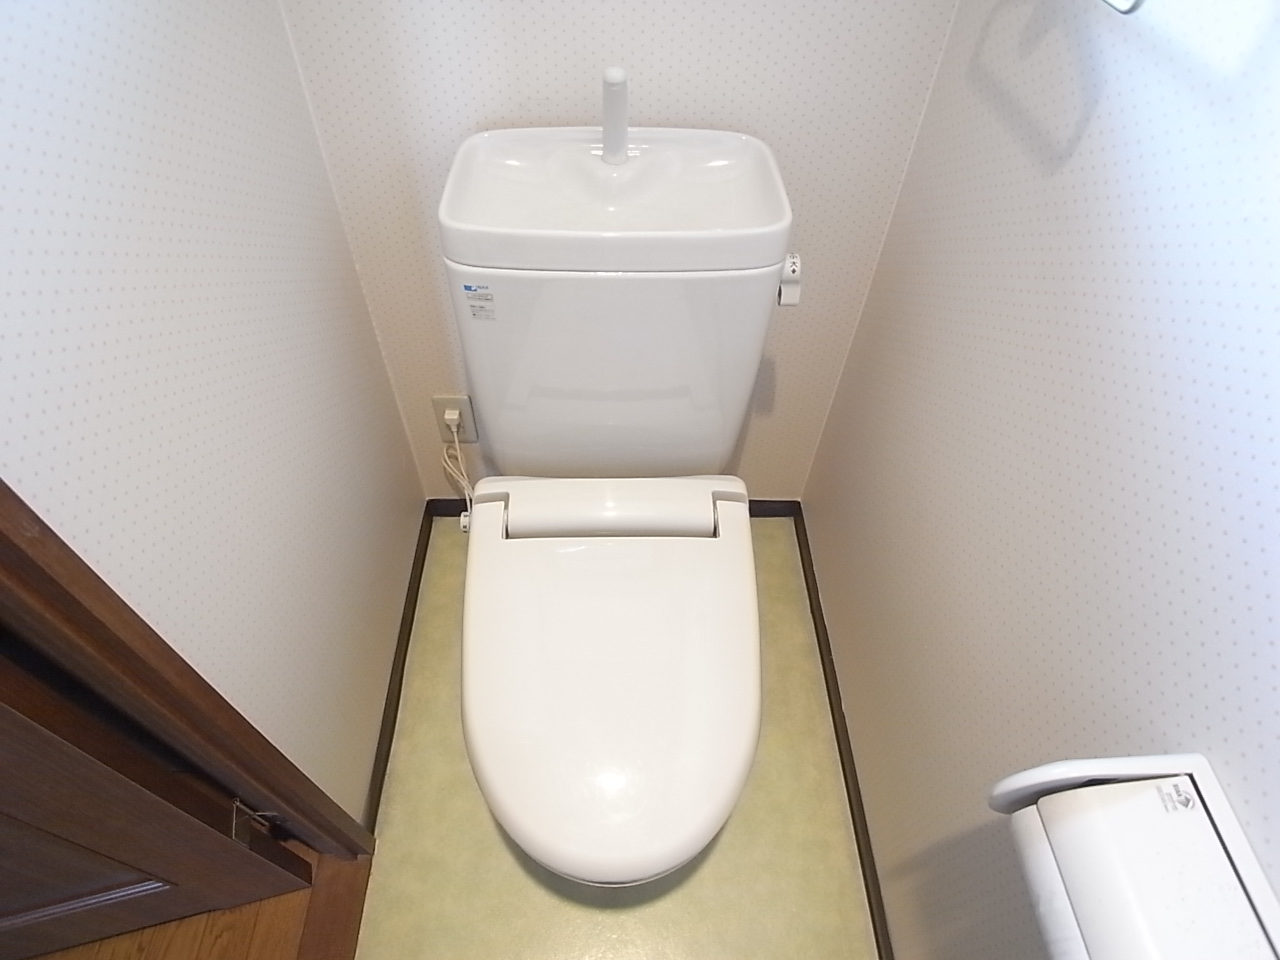 Toilet. A clean toilet